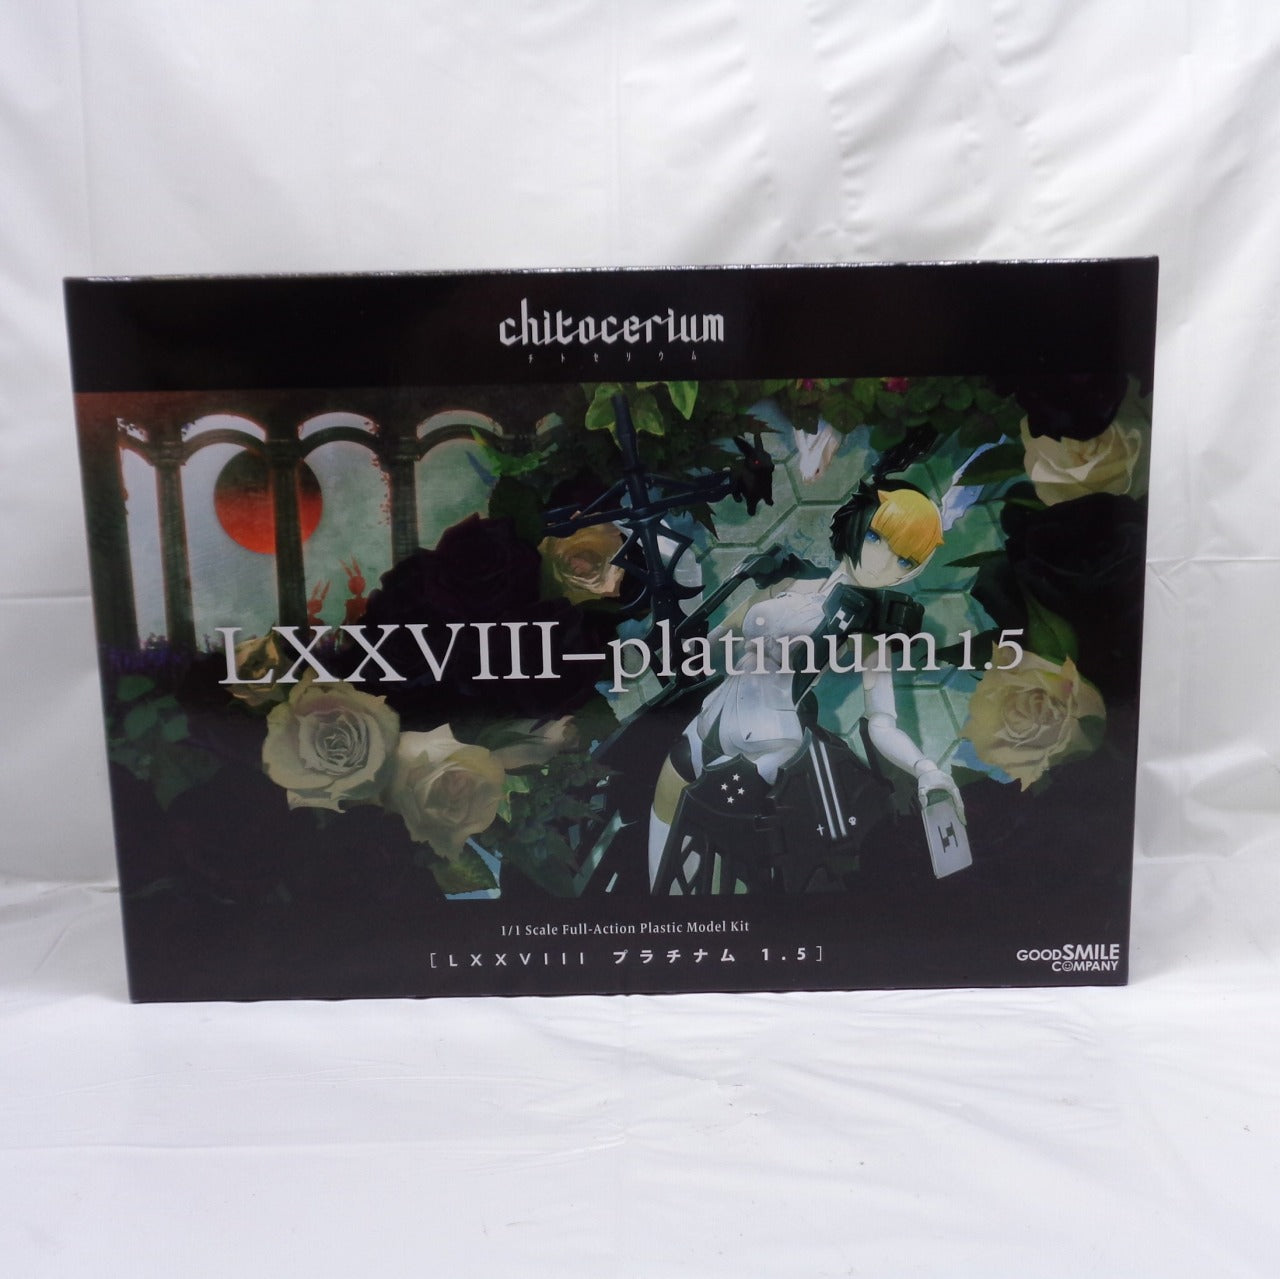 chitocerium LXXVIII-platinum 1.5 1/1 Plastic Model